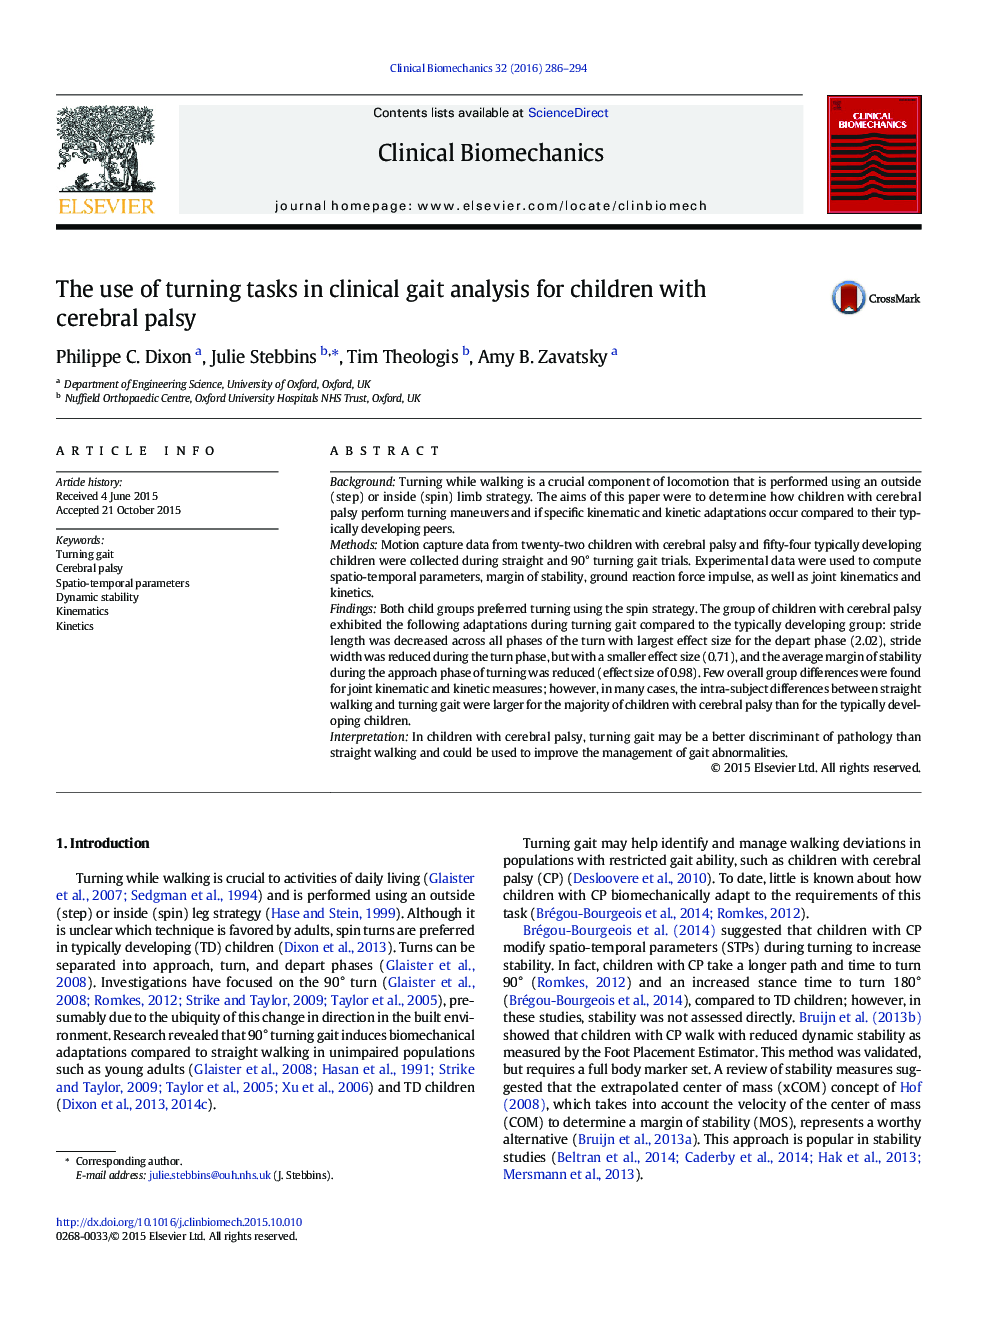 استفاده از وظایف چرخشی در تجزیه و تحلیل راه رفتن بالینی برای کودکان مبتلا به فلج مغزی 